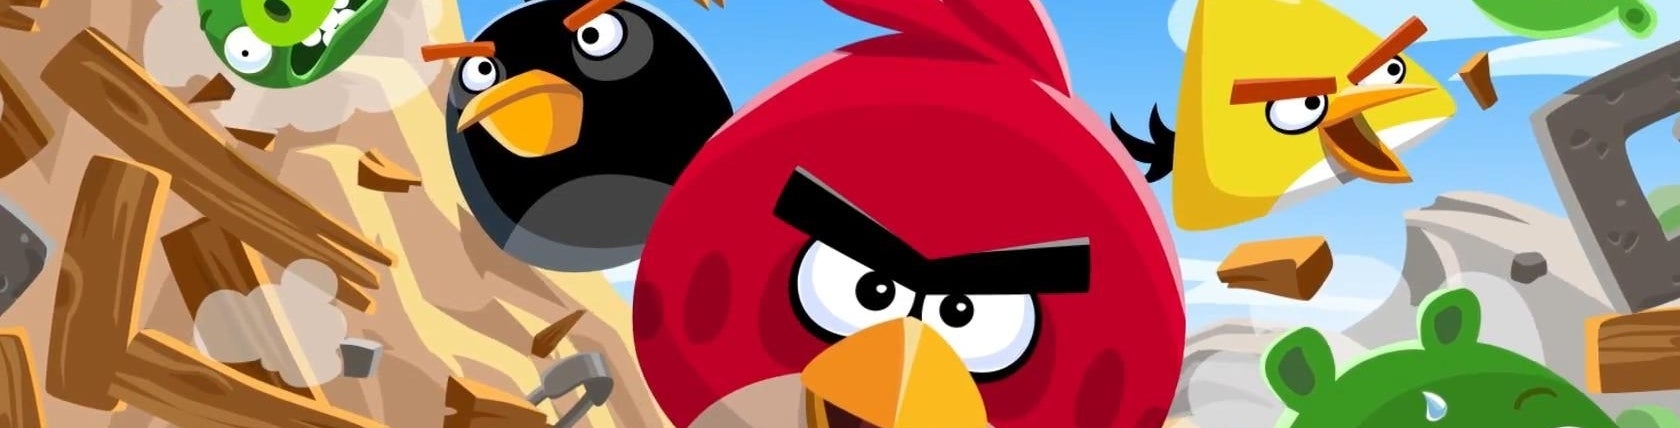 Afbeeldingen van Angry Birds twee miljard keer gedownload